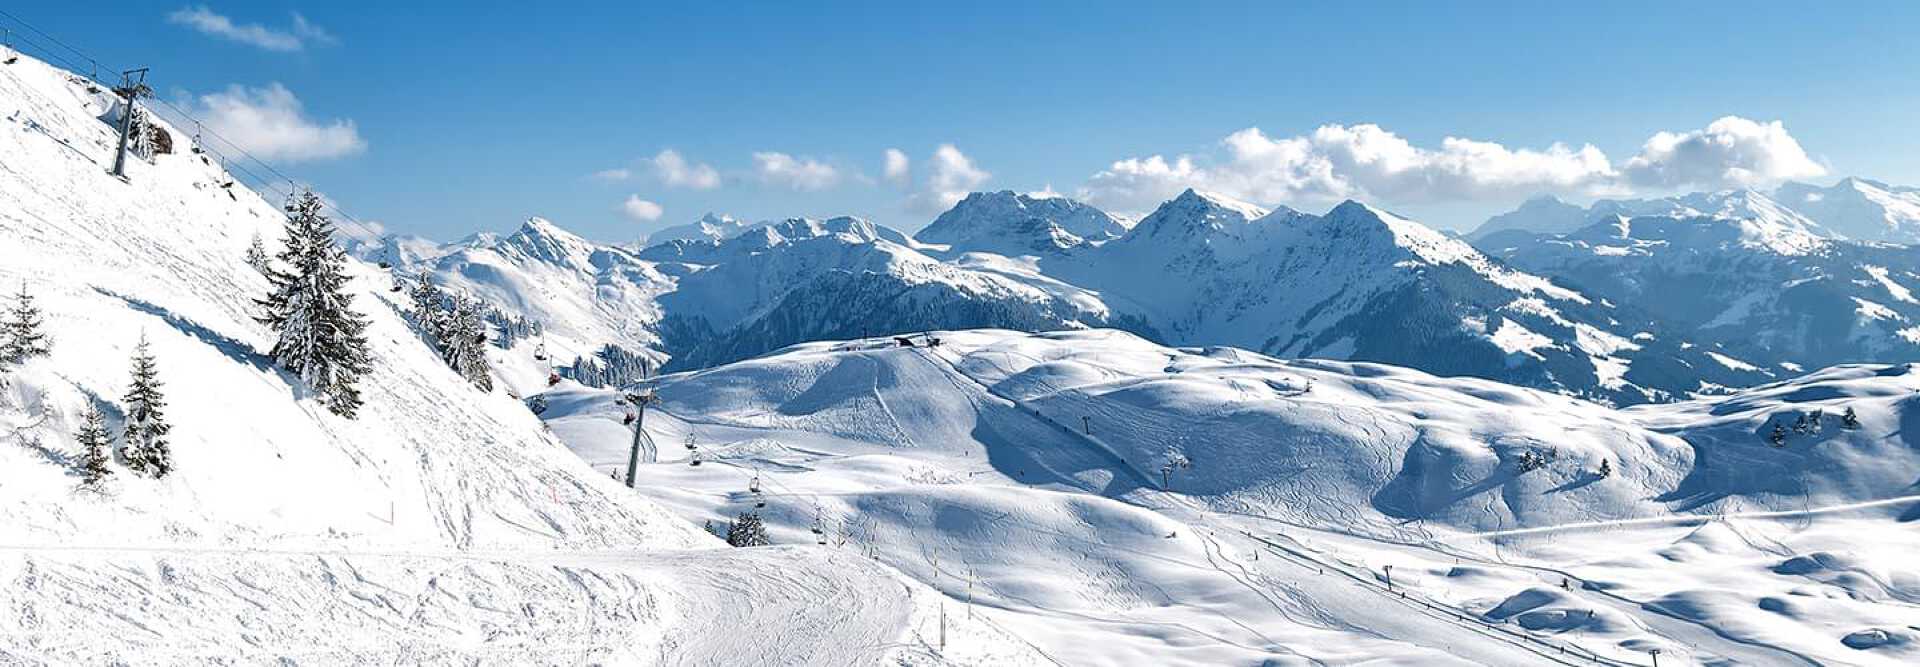 Photo of Kitzbuhel ski slopes with snowy mountains in Austria